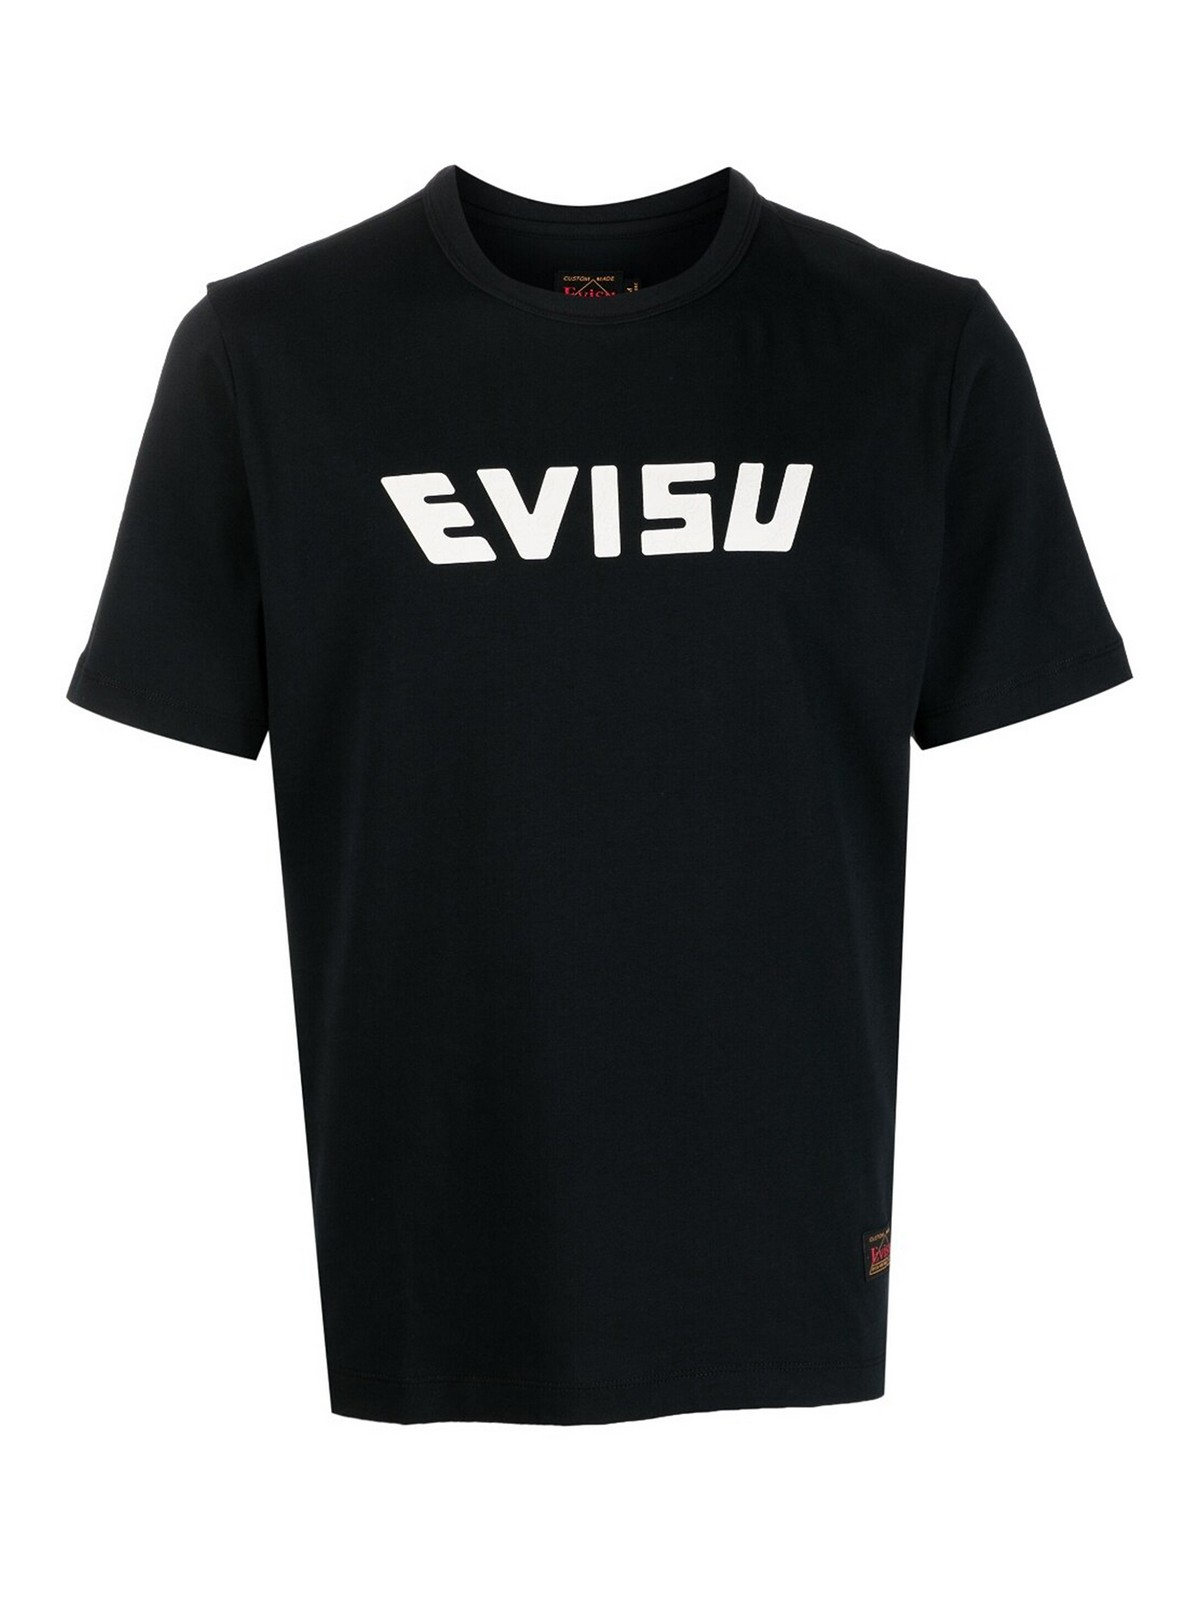 Evisu Logo PNG Vectors Free Download